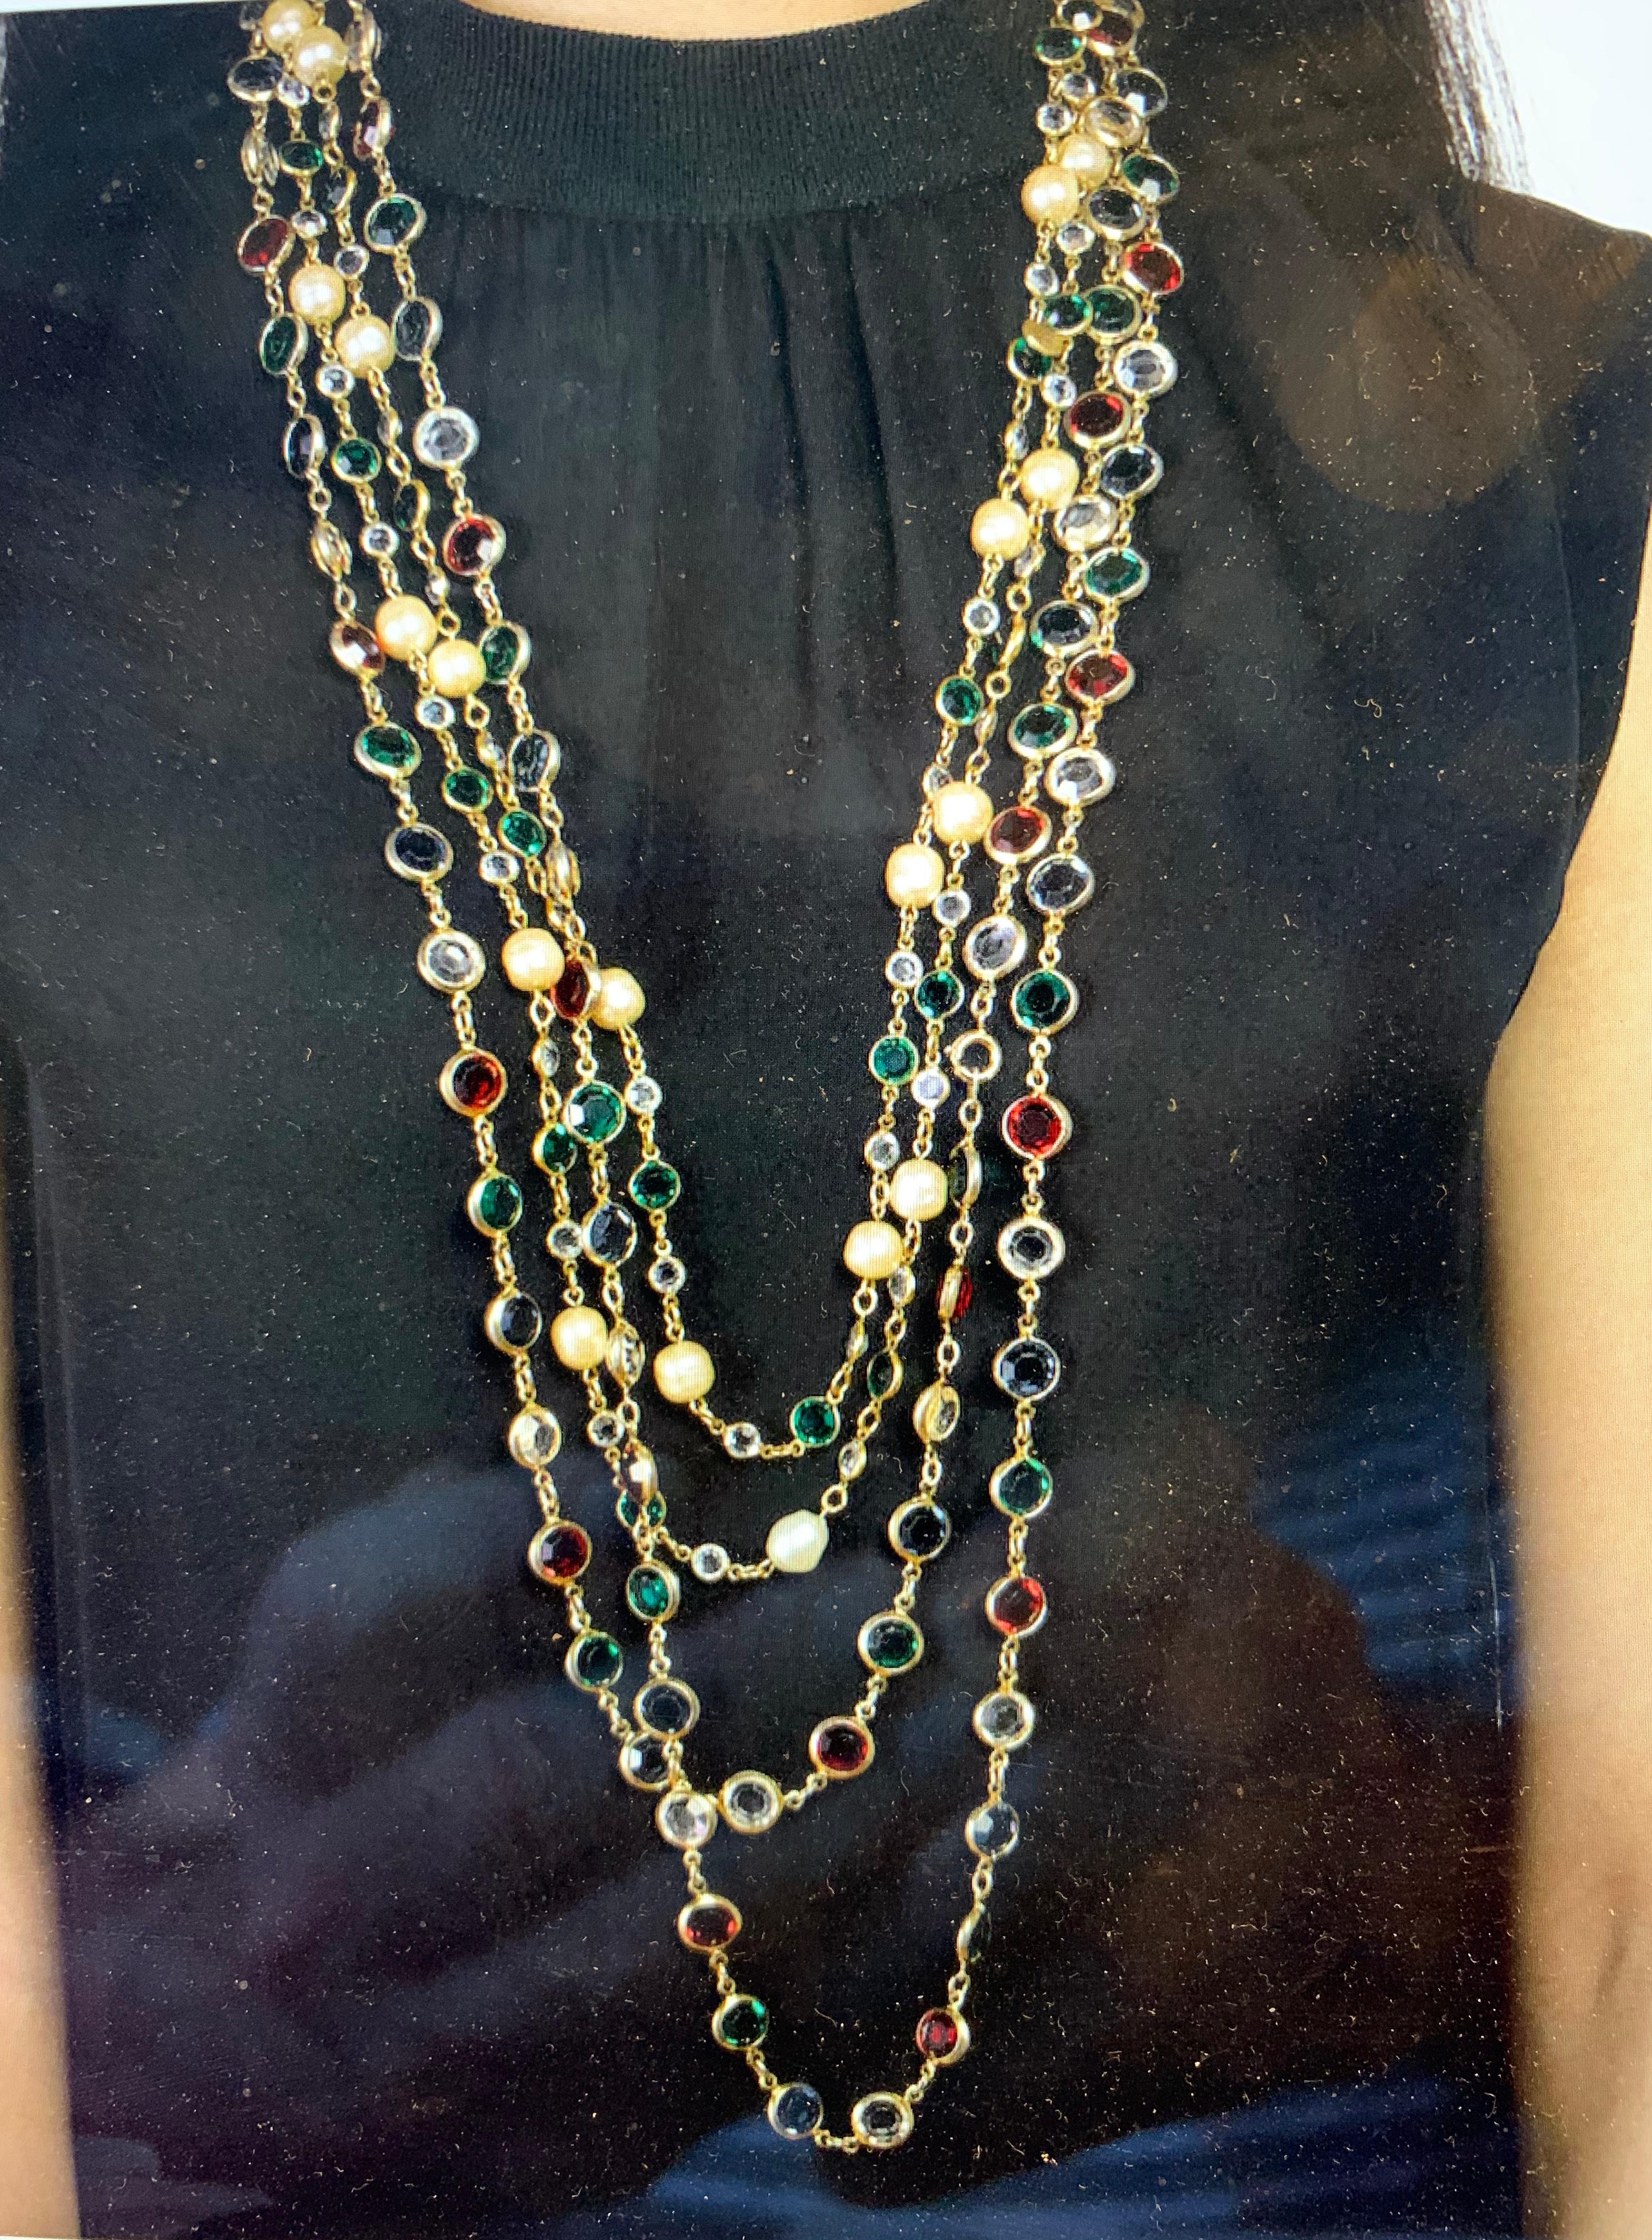 Aus der Sammlung der Schriftstellerin Barbara Taylor Bradford OBE (Order of the British Empire) stammen diese beiden außergewöhnlichen und sehr seltenen Chanel-Halsketten aus Gripoix-Glas und Kunstperlen, signiert von Chanel und datiert 1981, mit